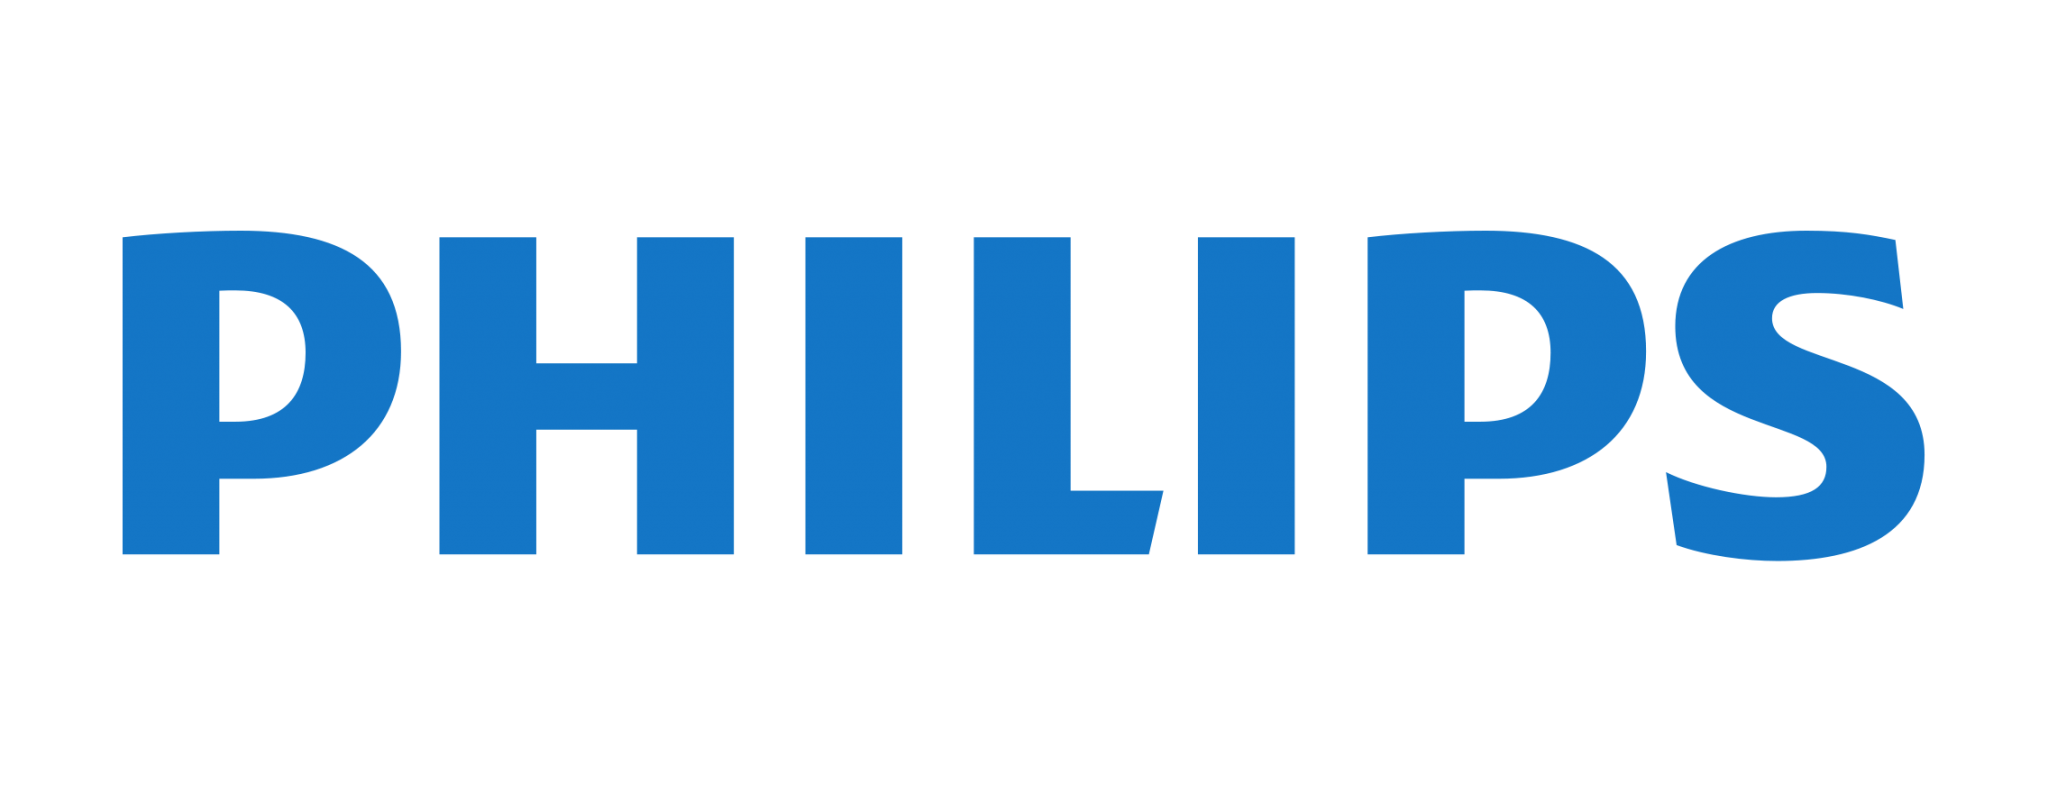 شرکت فیلیپس | تاریخچه شرکت فیلیپس